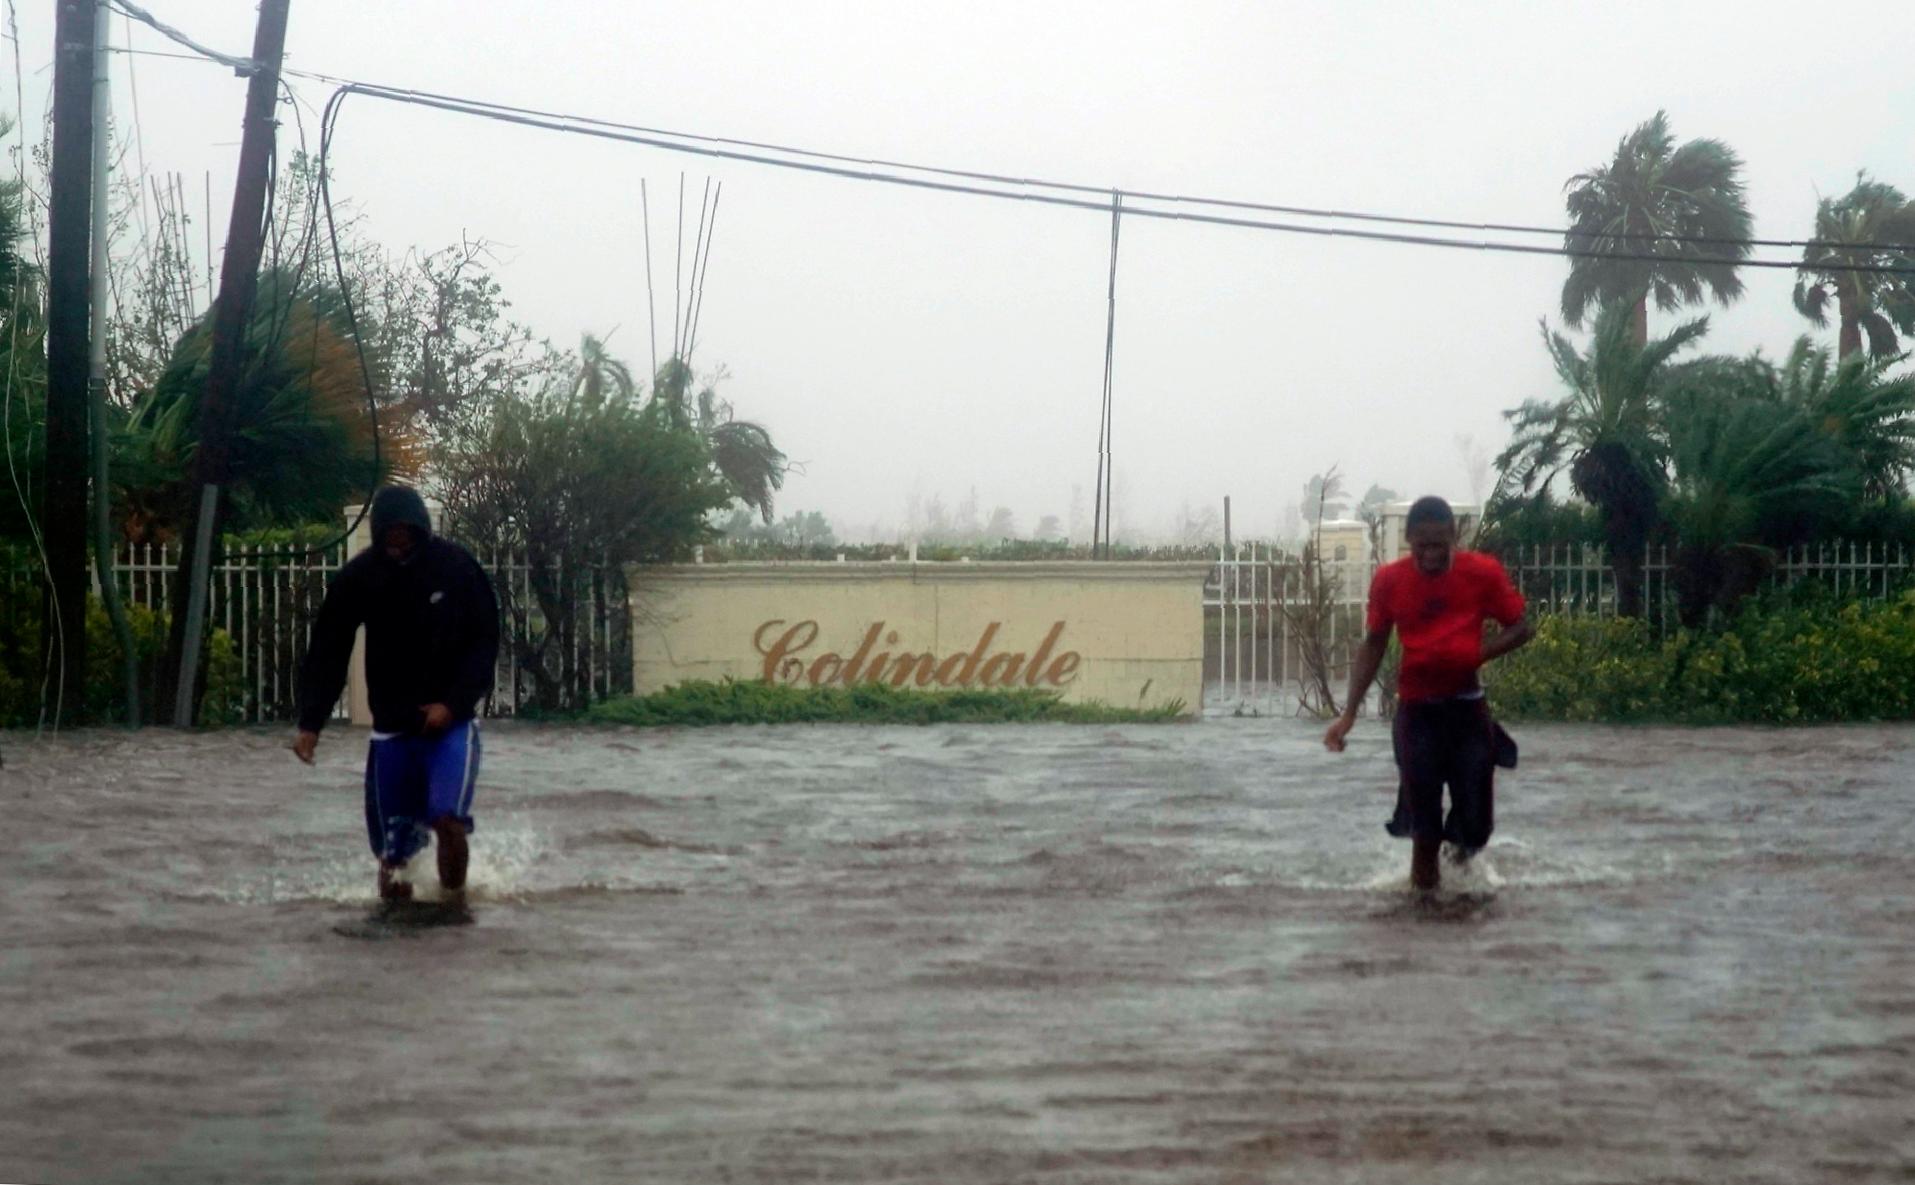 Los residentes deambulan por una calle inundada de agua provocada por el huracán Dorian en Freeport, Bahamas, el martes 3 de septiembre de 2019. Dorian comienza a avanzar lentamente hacia el noroeste después de estar inmóvil sobre las Bahamas, donde sus vientos implacables han causado daños catastróficos e inundaciones. 